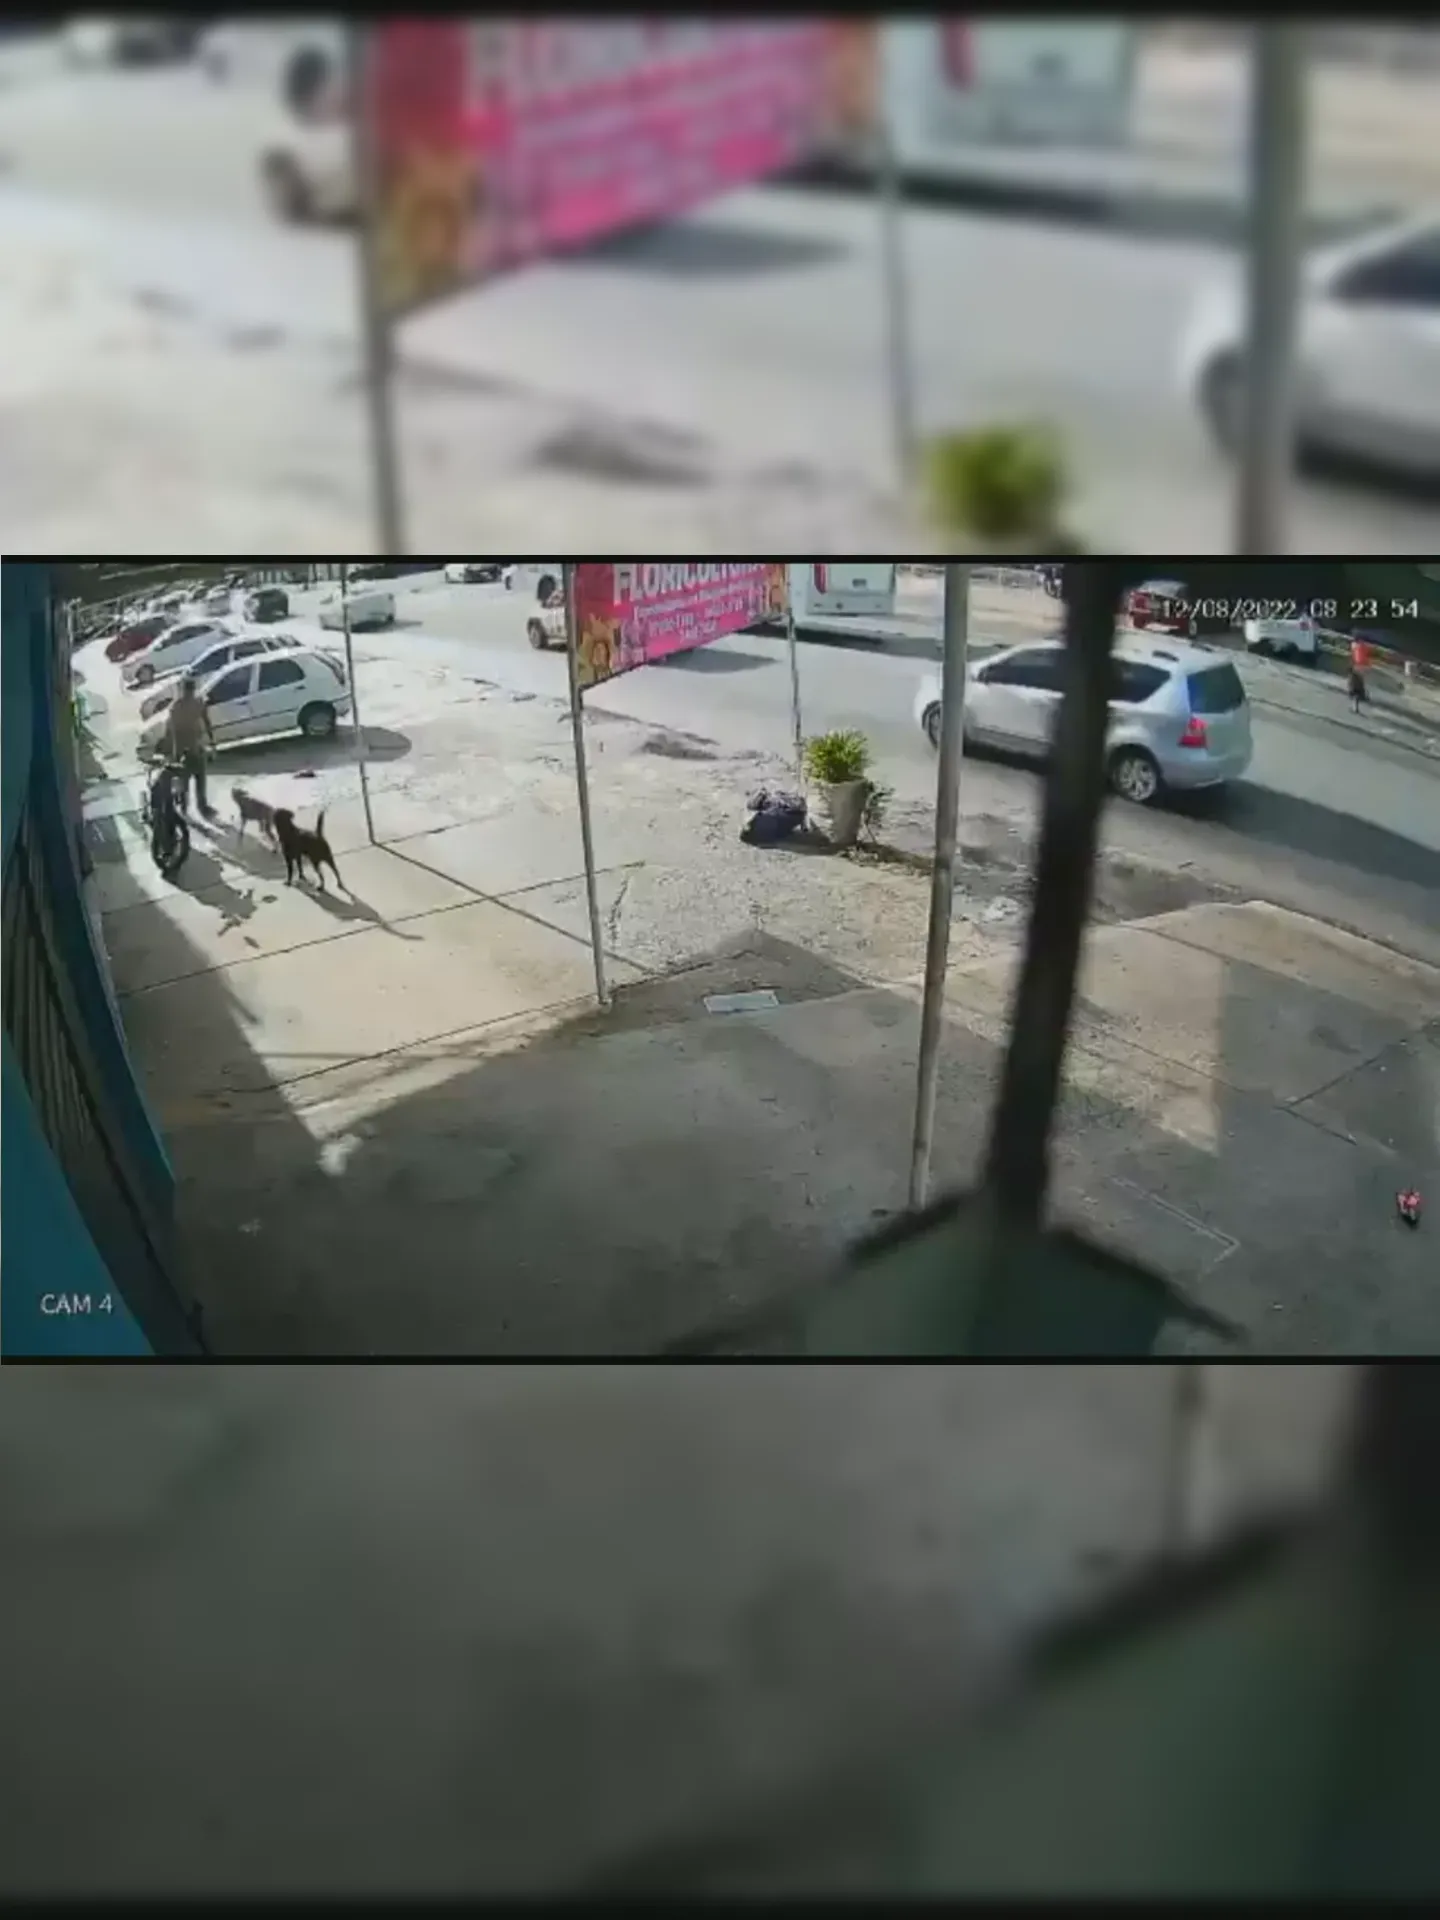 Imagens de câmeras de segurança do local filmaram a ação do homem contra o animal